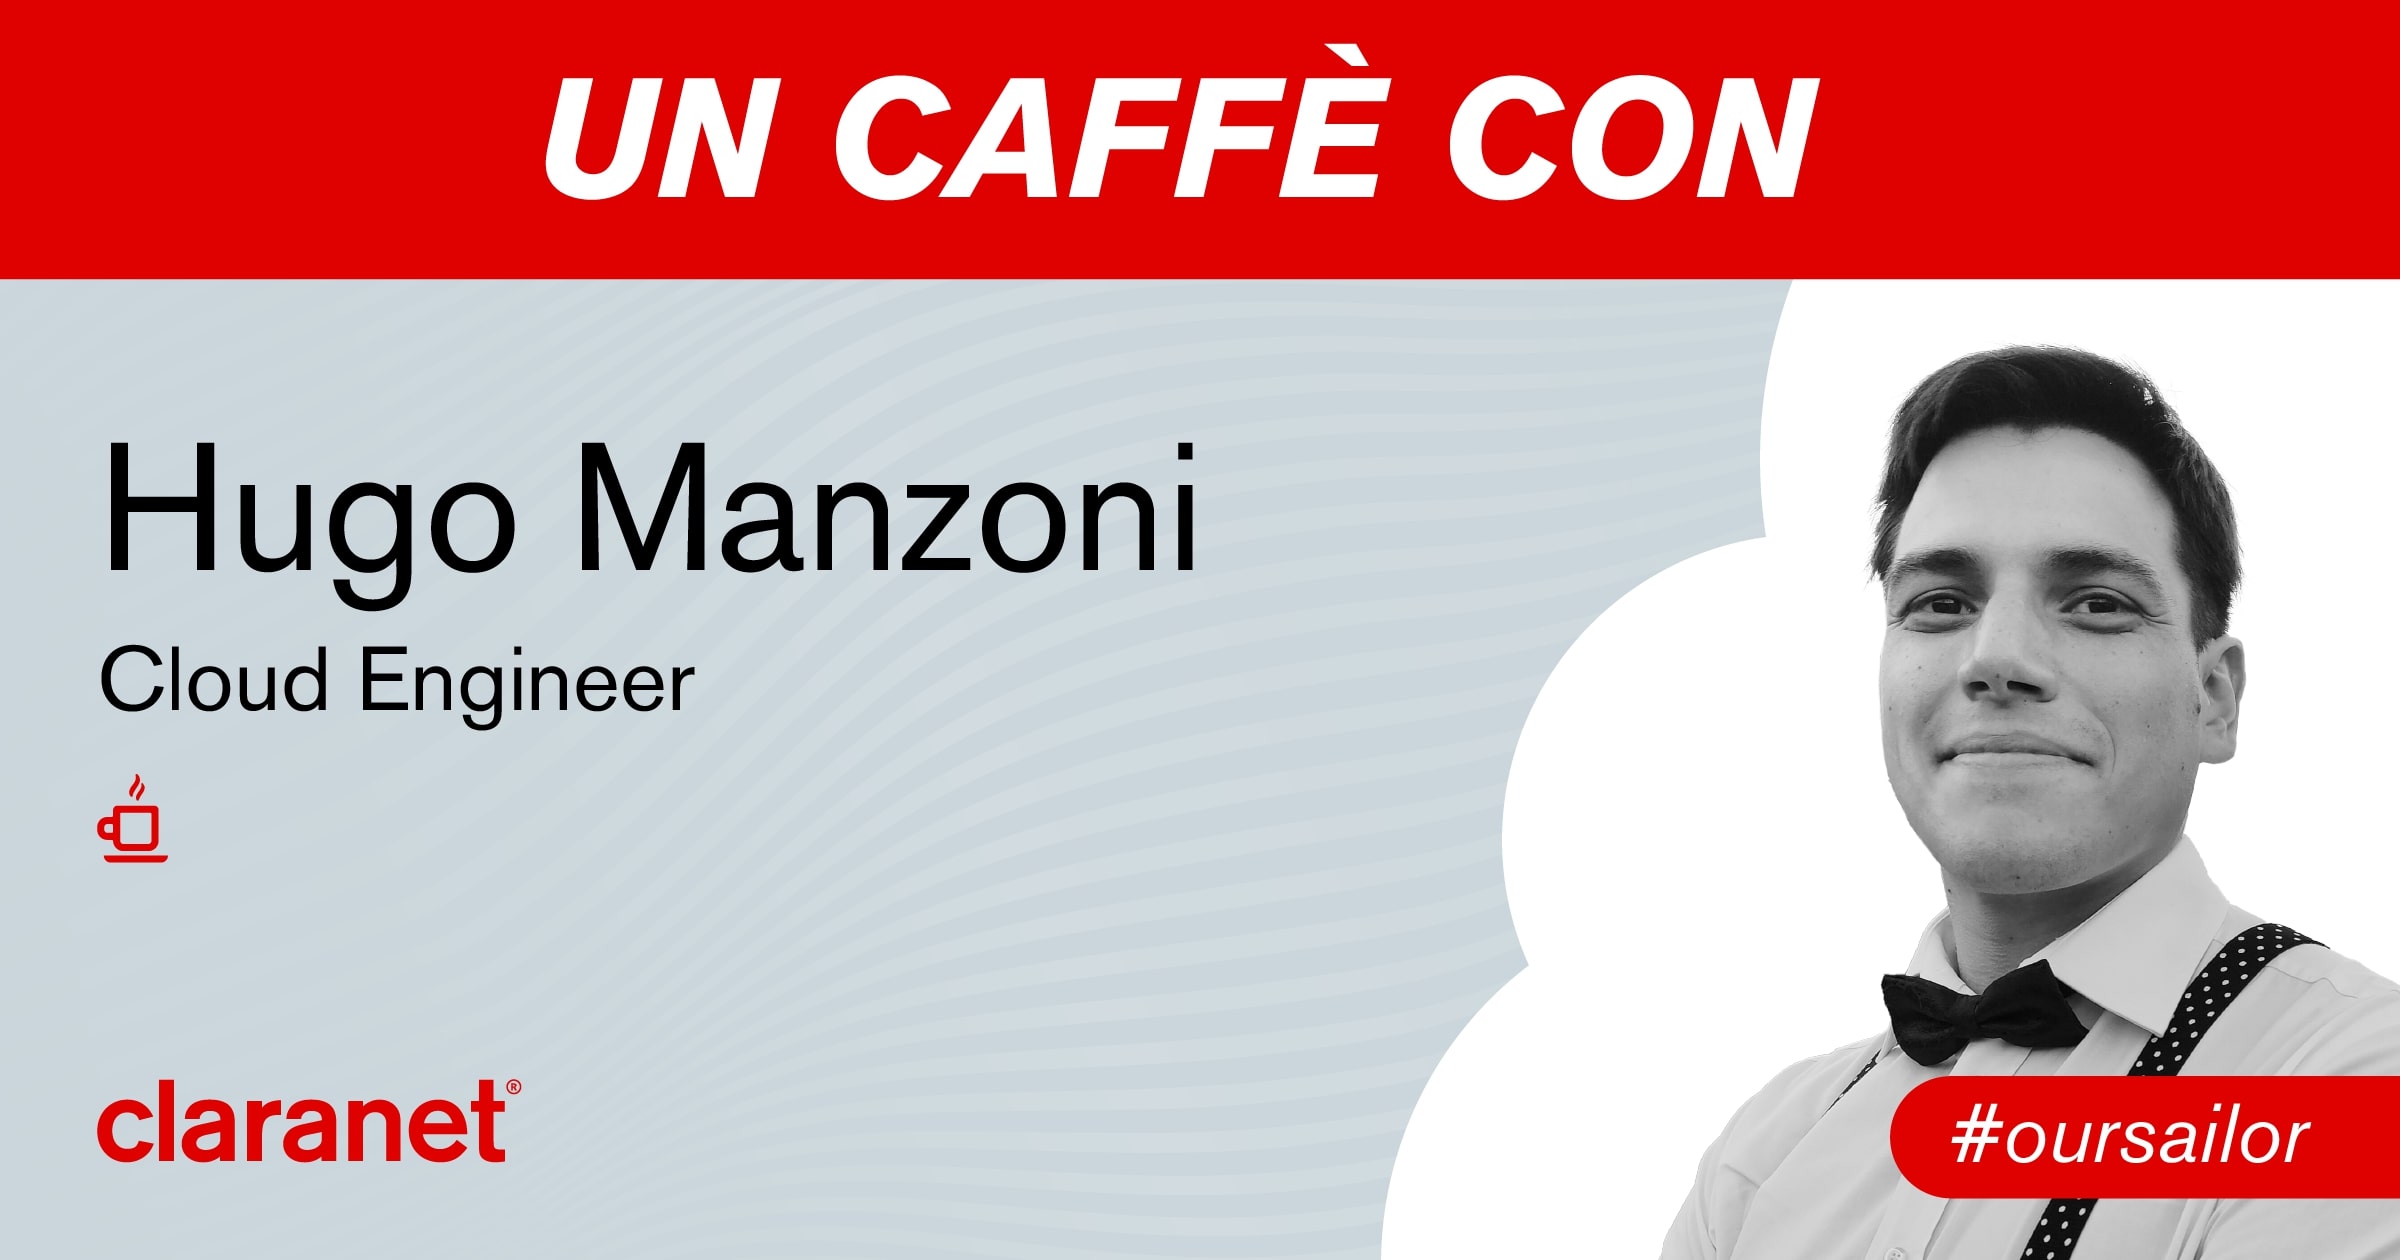 Un caffè con… Hugo Manzoni!